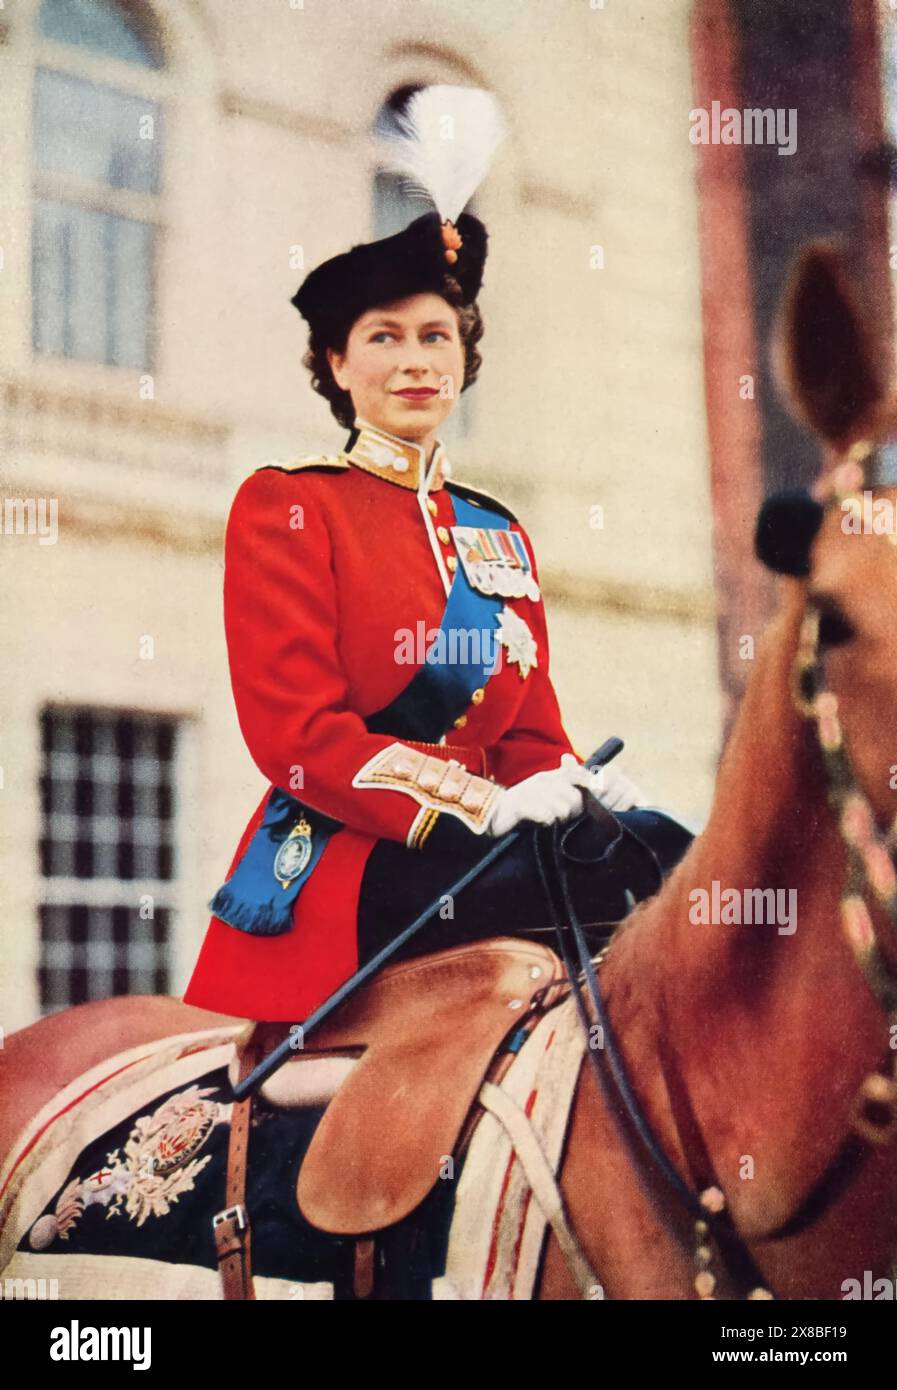 Prinzessin Elizabeth, spätere Königin Elizabeth II., bei Trooping the Colour, 1951. Seine Majestät König Georg VI. Konnte aufgrund gesundheitlicher Erkrankungen nicht an der Trooping the Colour teilnehmen, so dass seine Tochter Prinzessin Elizabeth seinen Platz einnahm. Prinzessin Elizabeth ritt ein Pferd namens Winston. Stockfoto